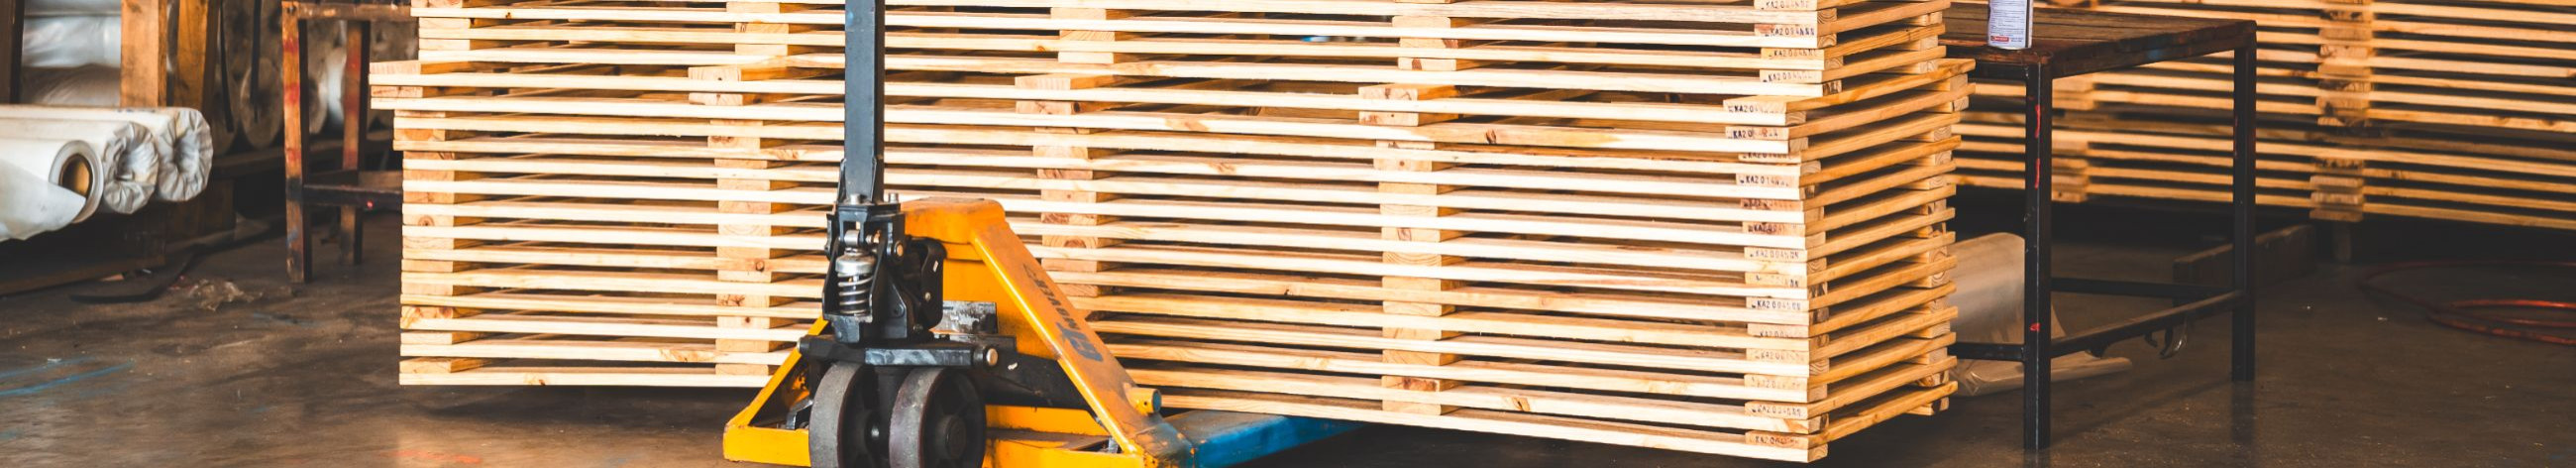 Spetsialiseerume puit- ja muude pakendimaterjalide tootmisele ning tarnimisele, pakkudes terviklikke lahendusi.